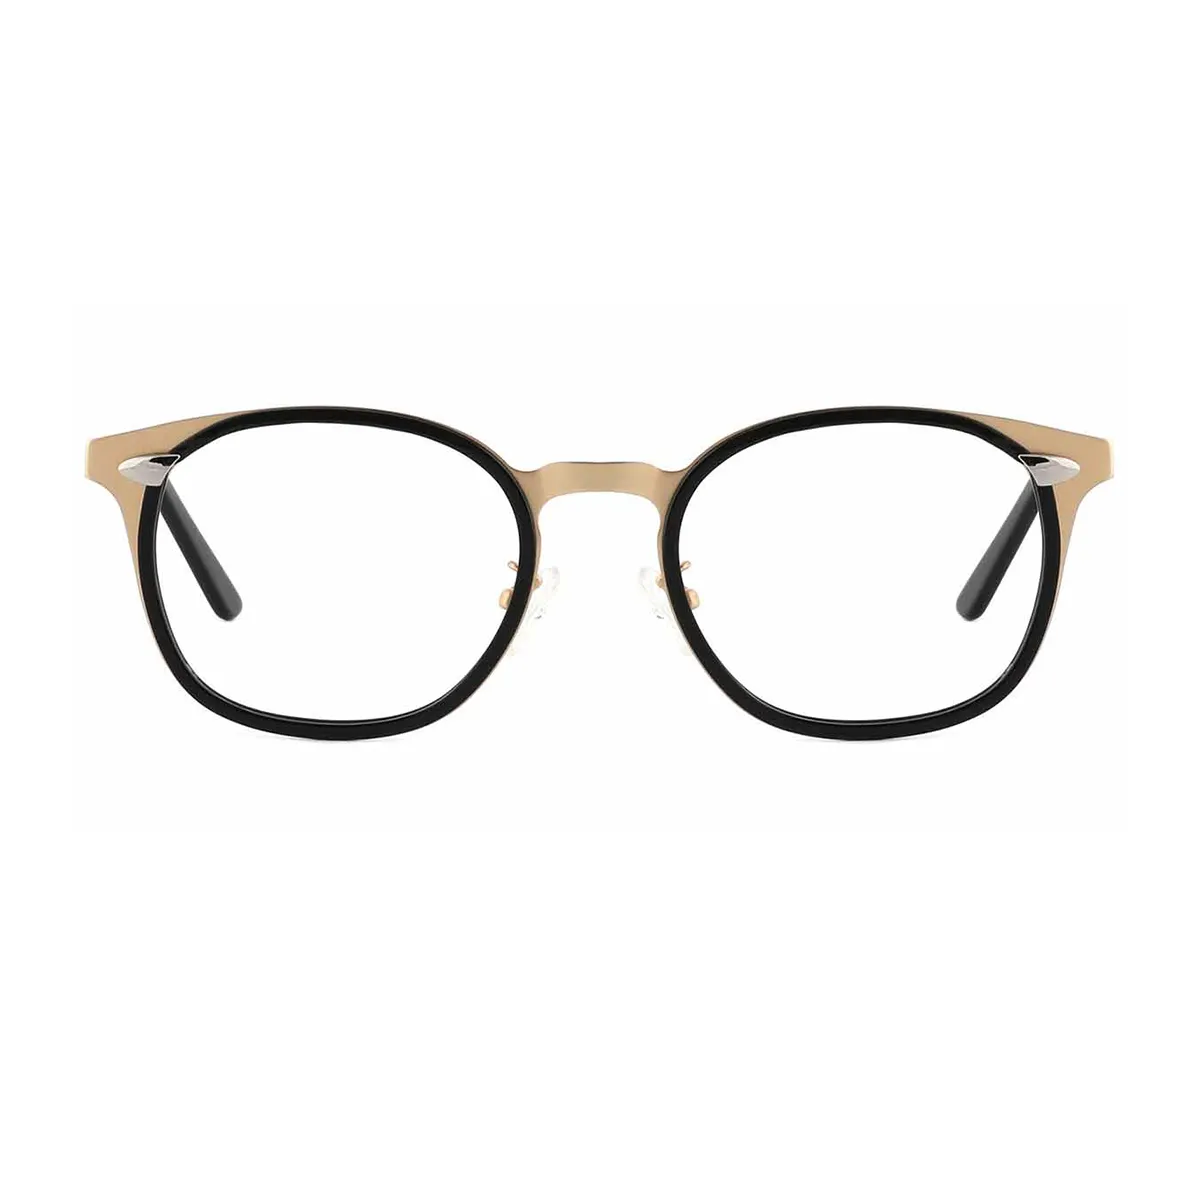 Fashion Oval Black-Gold  Eyeglasses for Women & Men